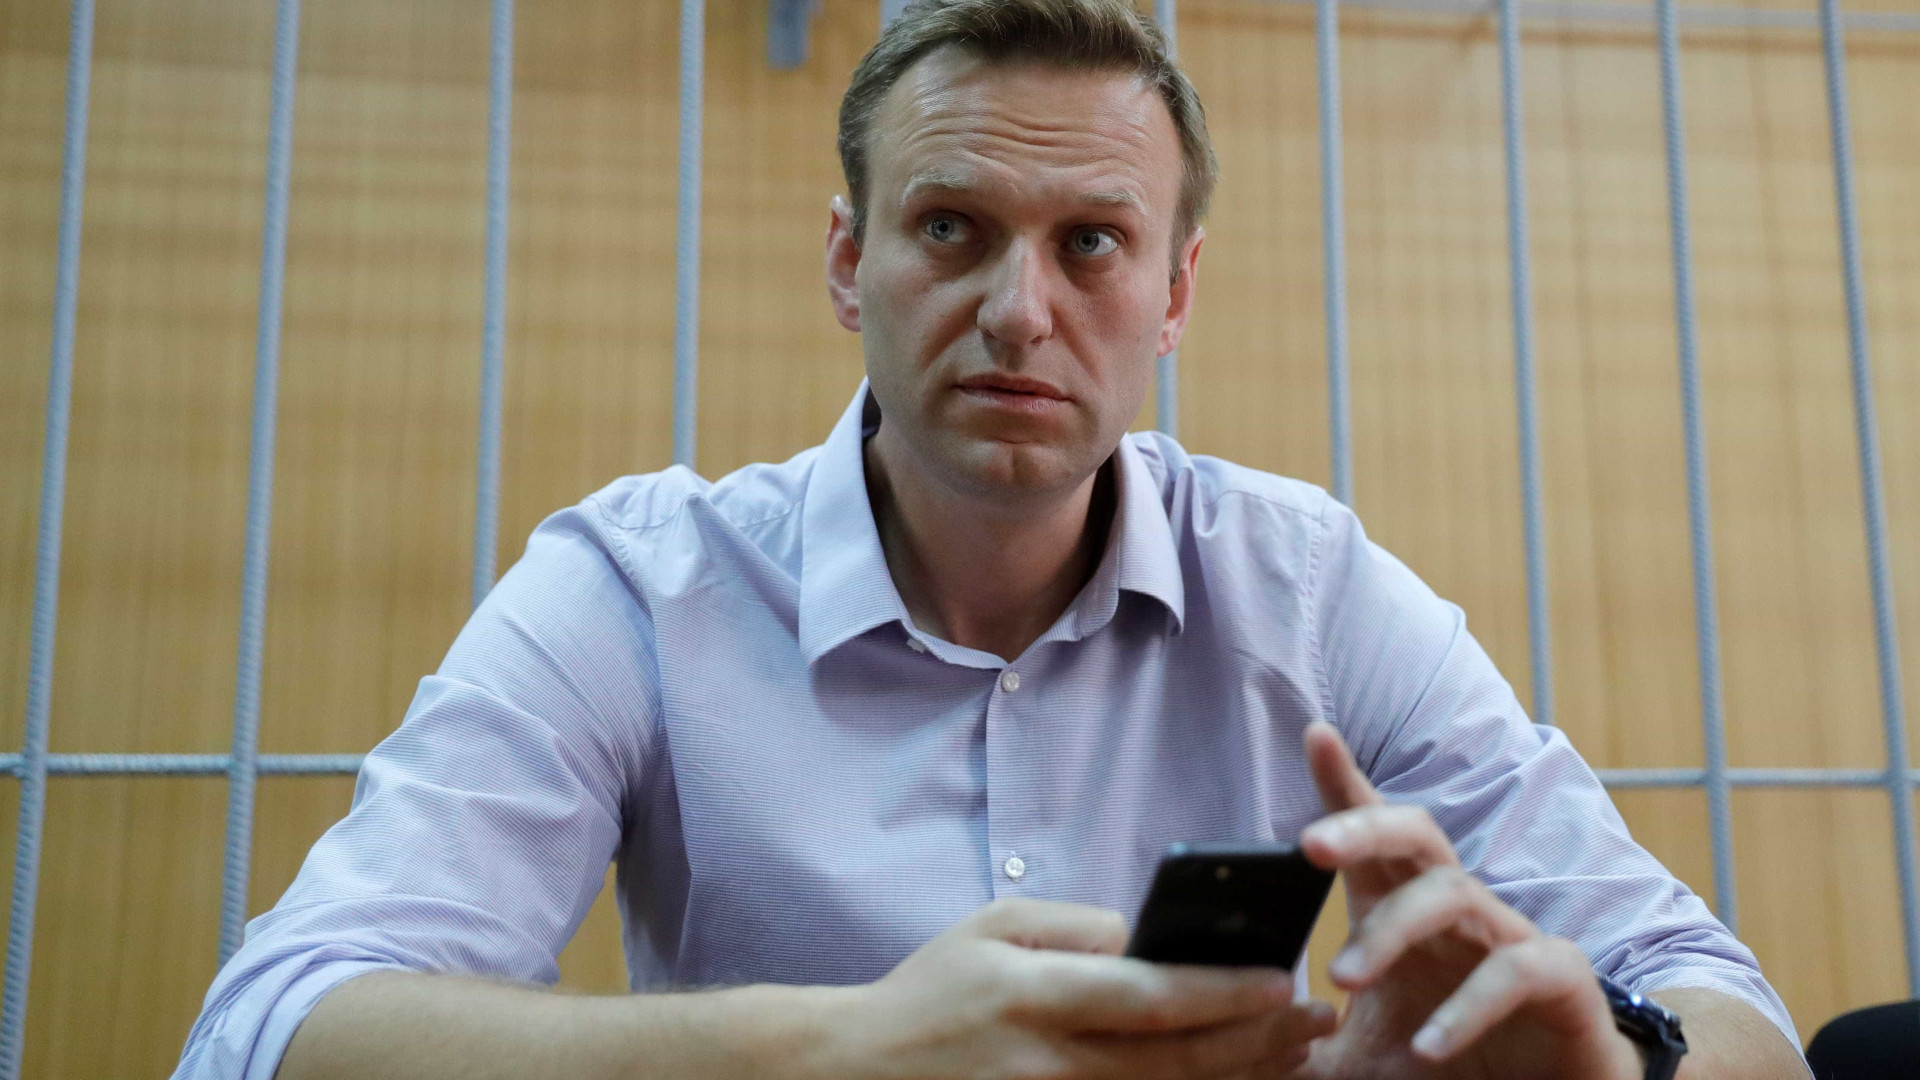 Autoridades russas ameaçam enterrar Navalni em prisão, diz família